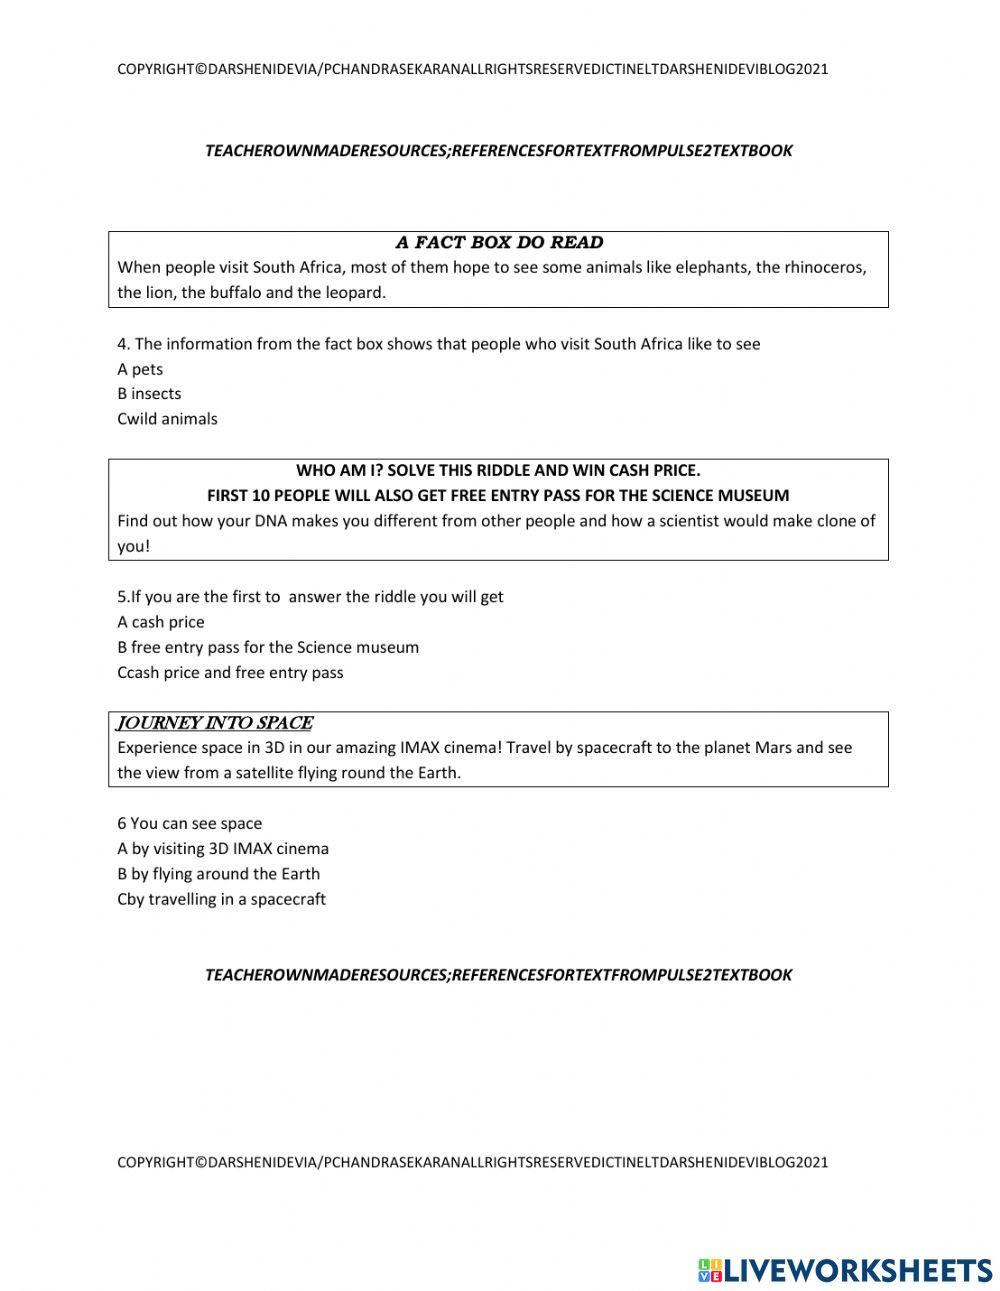 Pt3 short text mcq worksheets 2 sets 16 questions